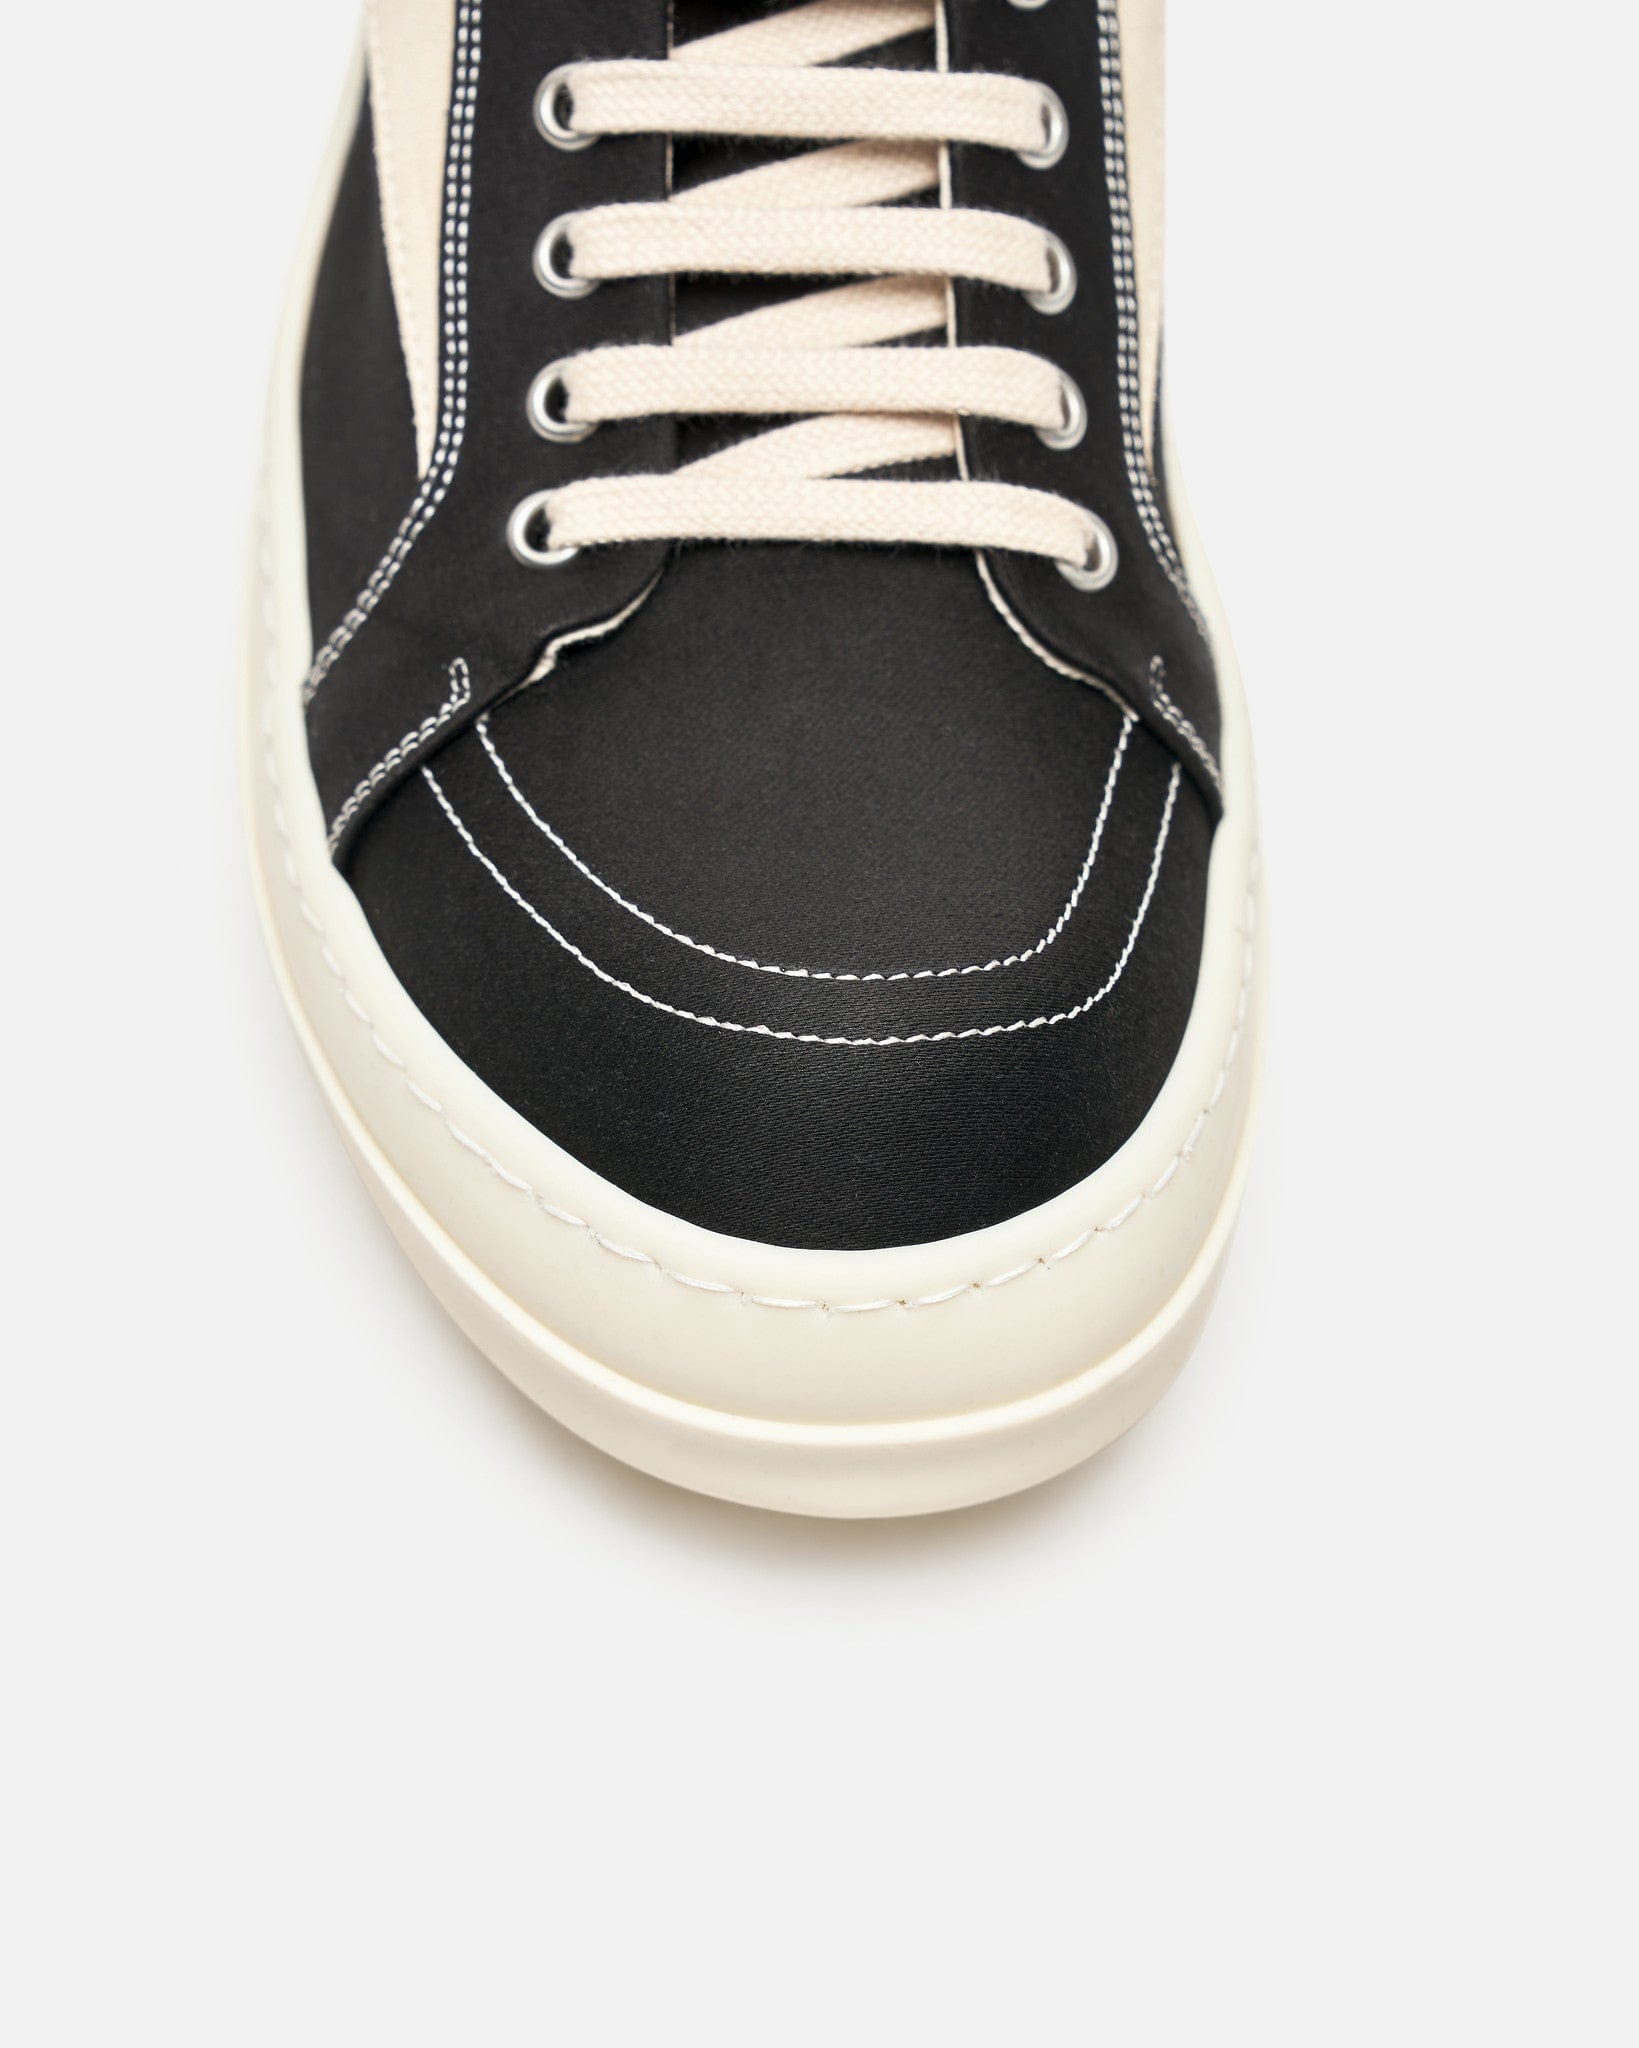 Rick Owens DRKSHDW Men's Shoes Vintage Sneakers High in Black/Milk